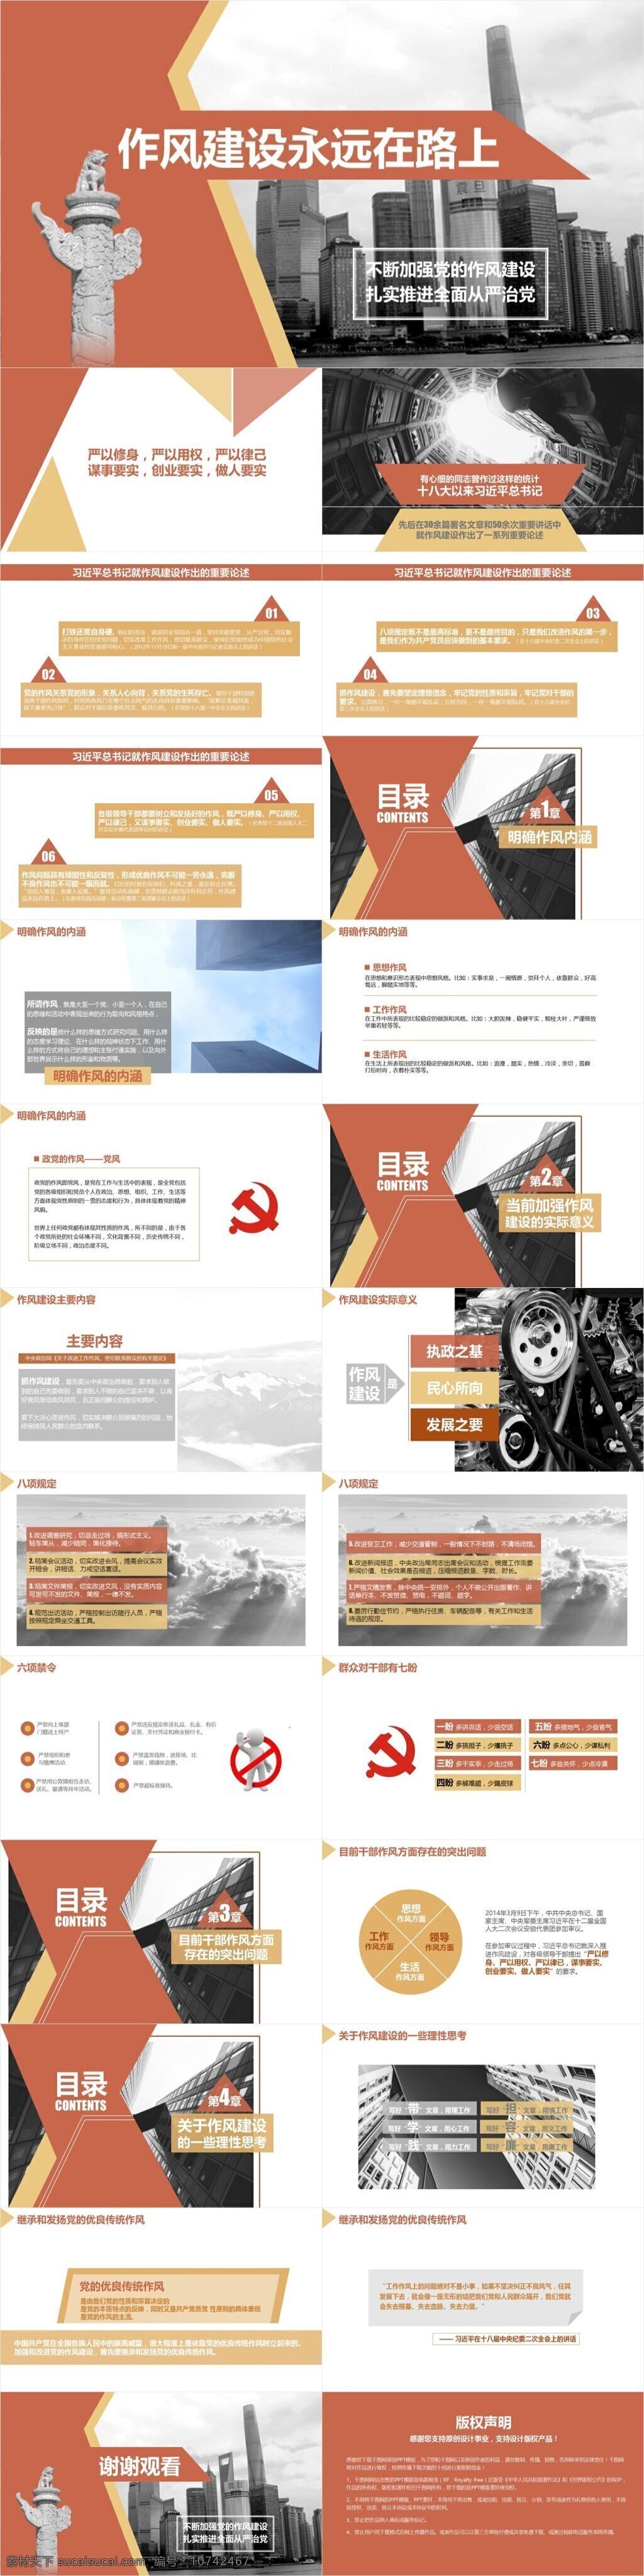 作风建设 永远 路上 ppt模板3 中国共产党 作风 政府作风 模板 简约大气 现代 中国 人民政府 文件